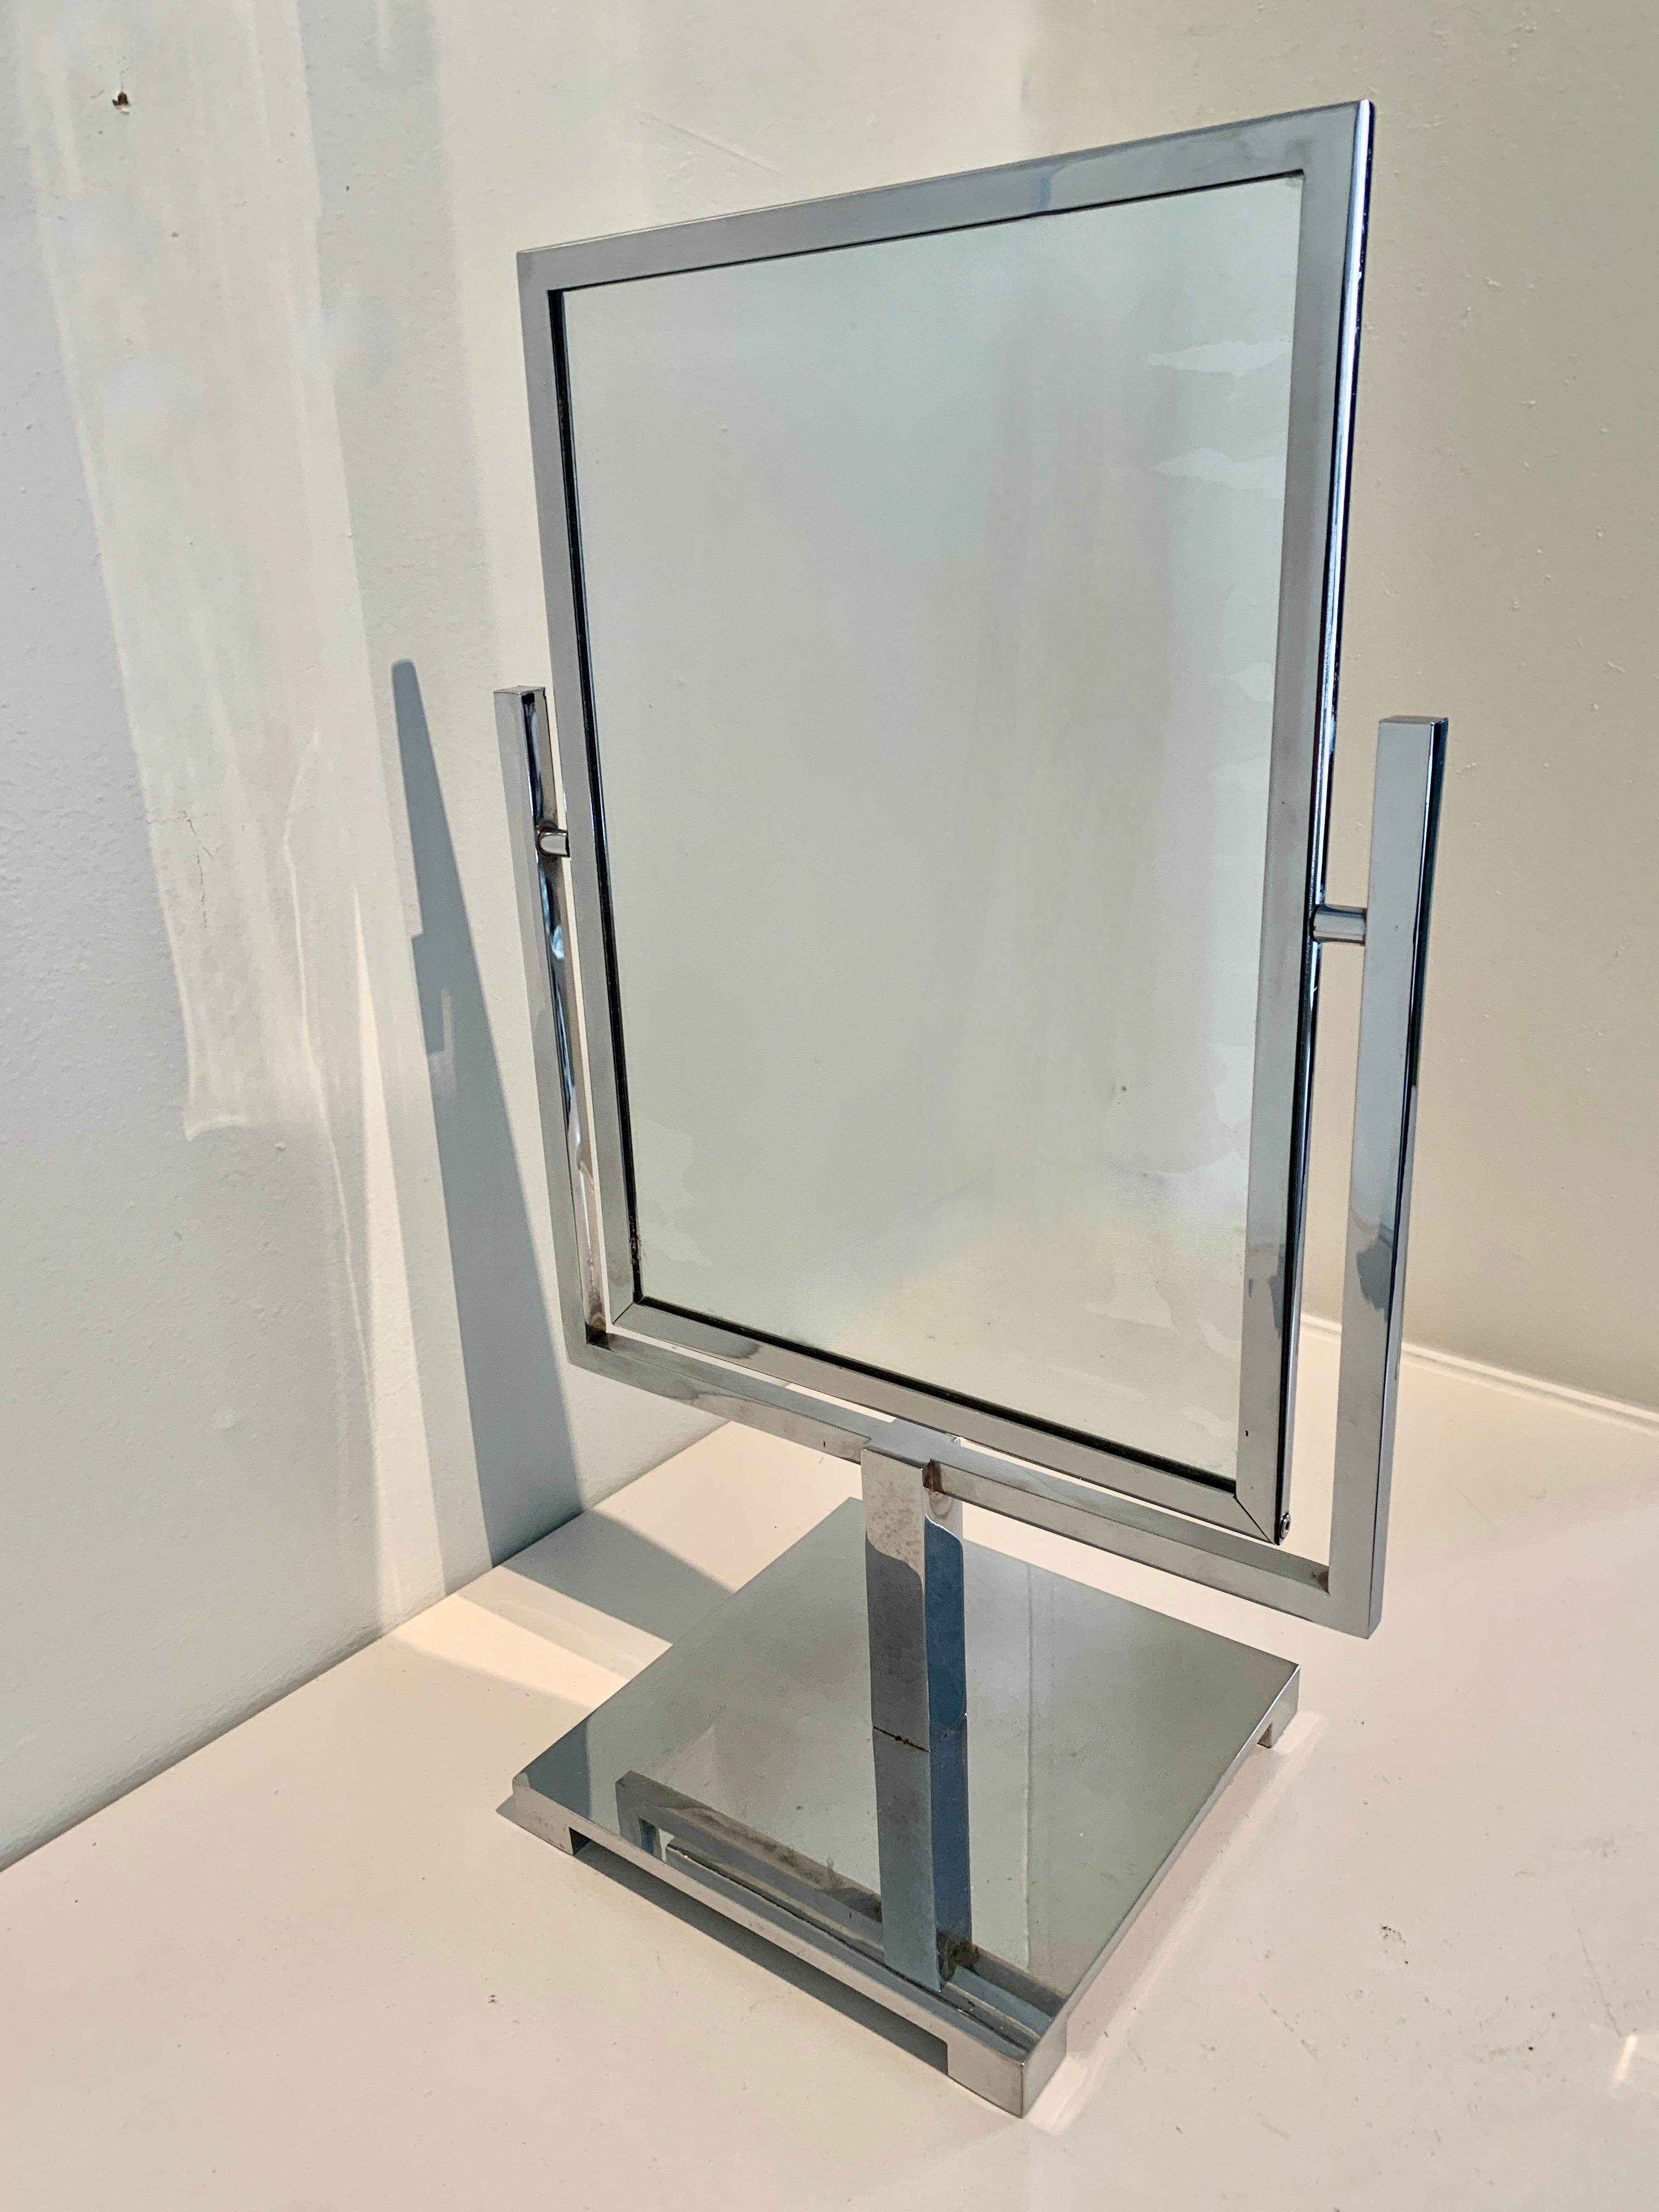 Un merveilleux miroir architectural. Le miroir est double face avec une réflexion normale (non grossissante) des deux côtés. Le miroir est enchâssé dans un cadre en chrome poli et repose sur un support du même matériau - quatre petits pieds.